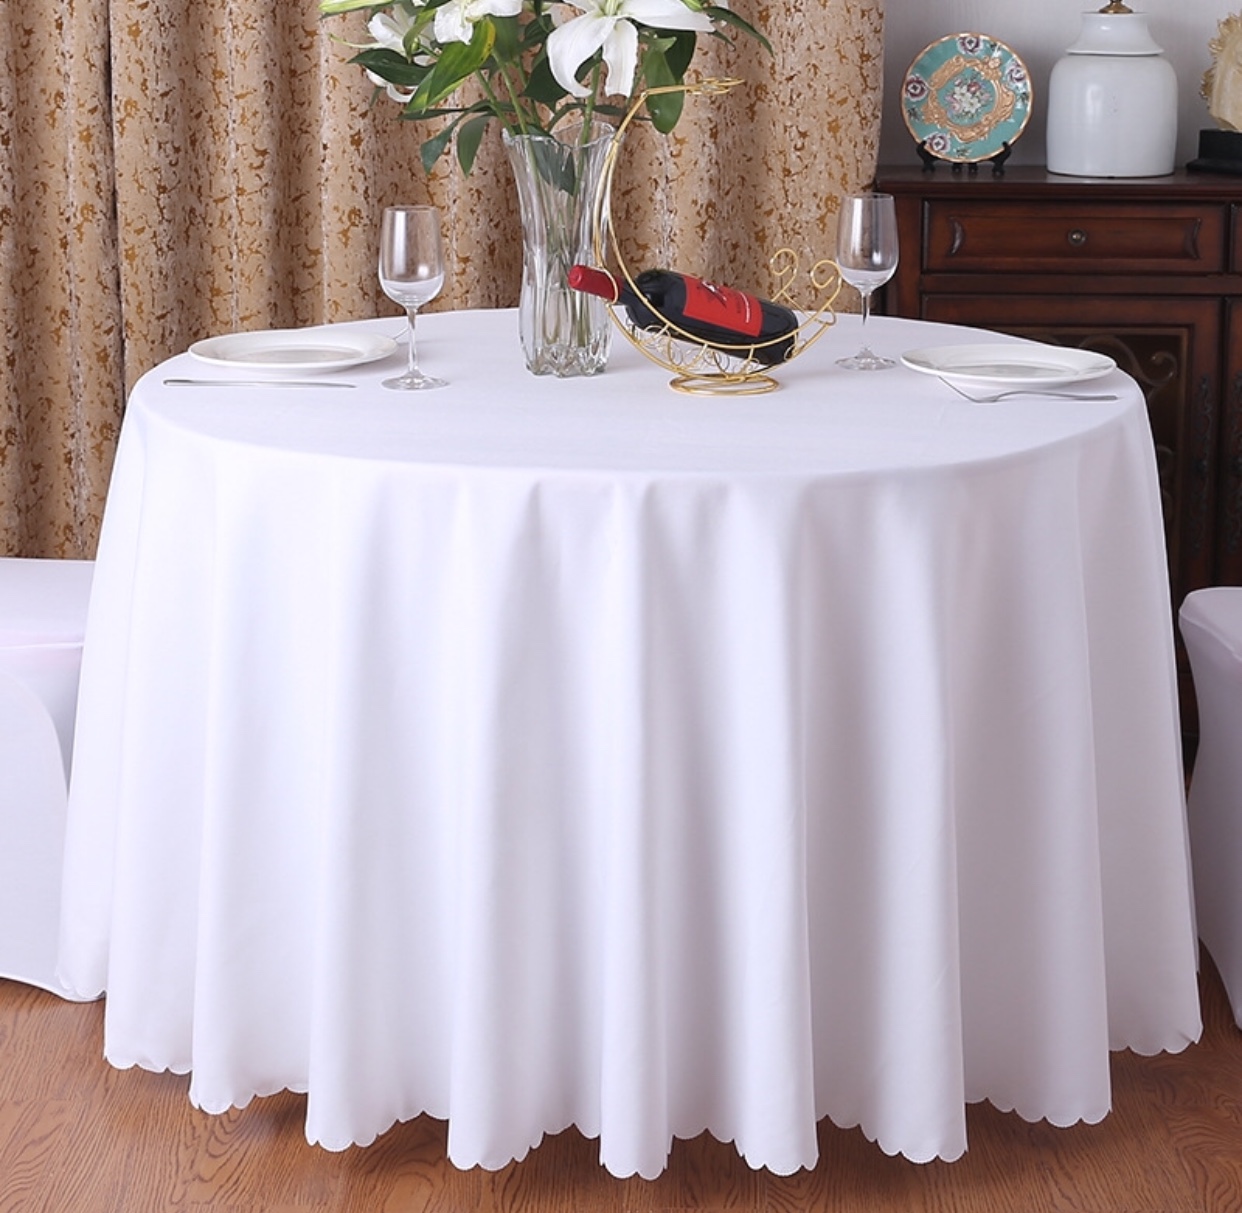 ผ้าปูโต๊ะสีขาว ผ้าปูโต๊ะกลม แบบหนาอย่างดีขนาด 2.2, 2.4, 2.8 เมตร ไร้รอยต่อทอเต็มผืน